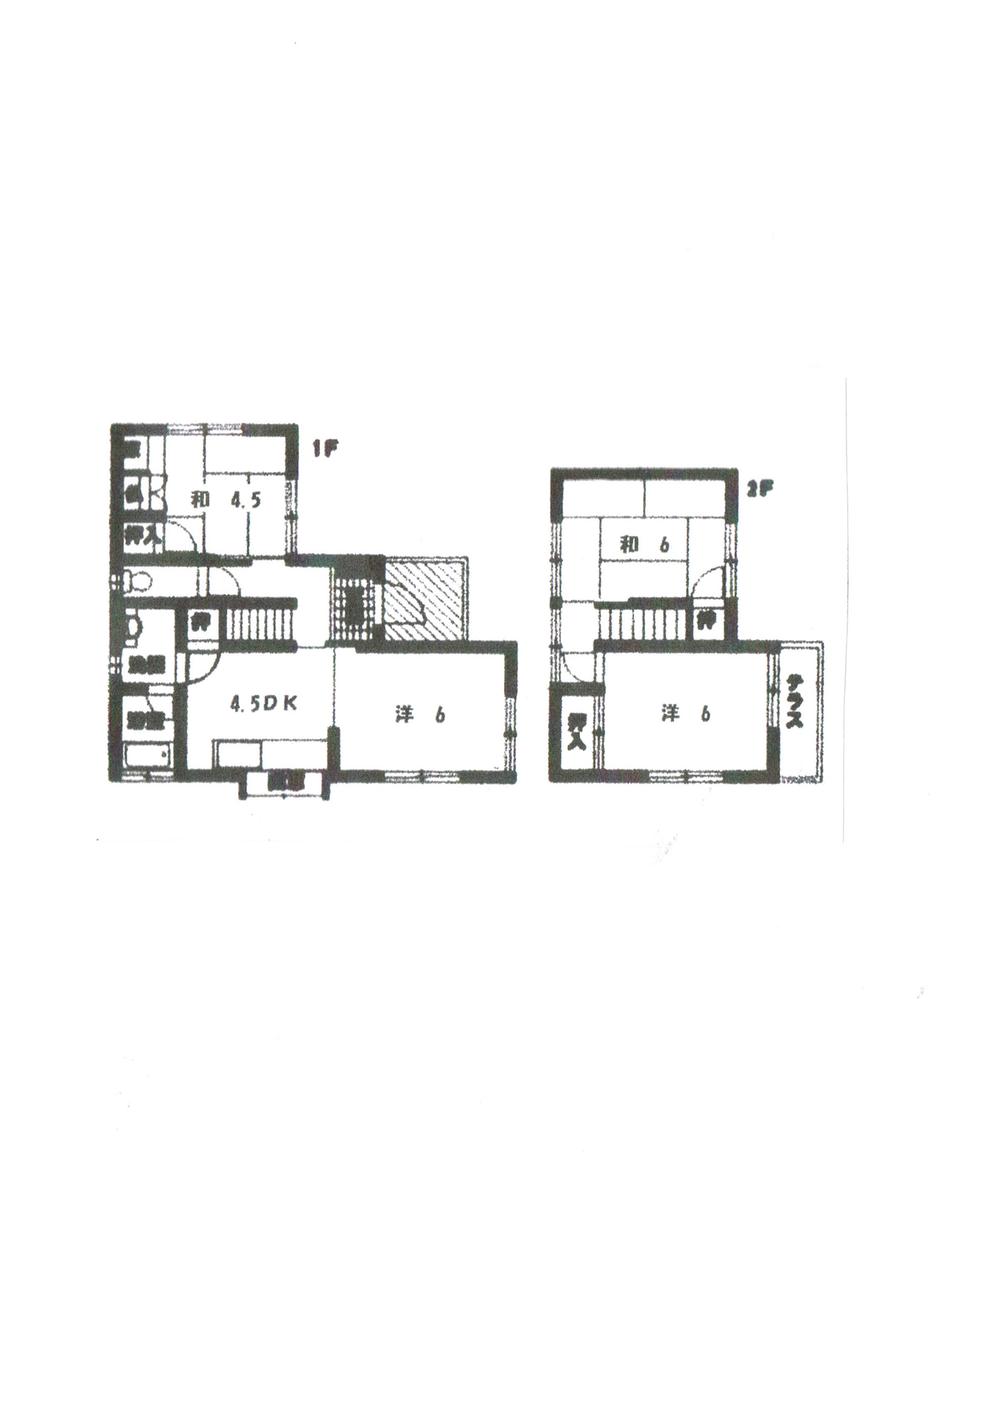 Floor plan. 14.2 million yen, 4DK, Land area 96.74 sq m , Building area 66.42 sq m